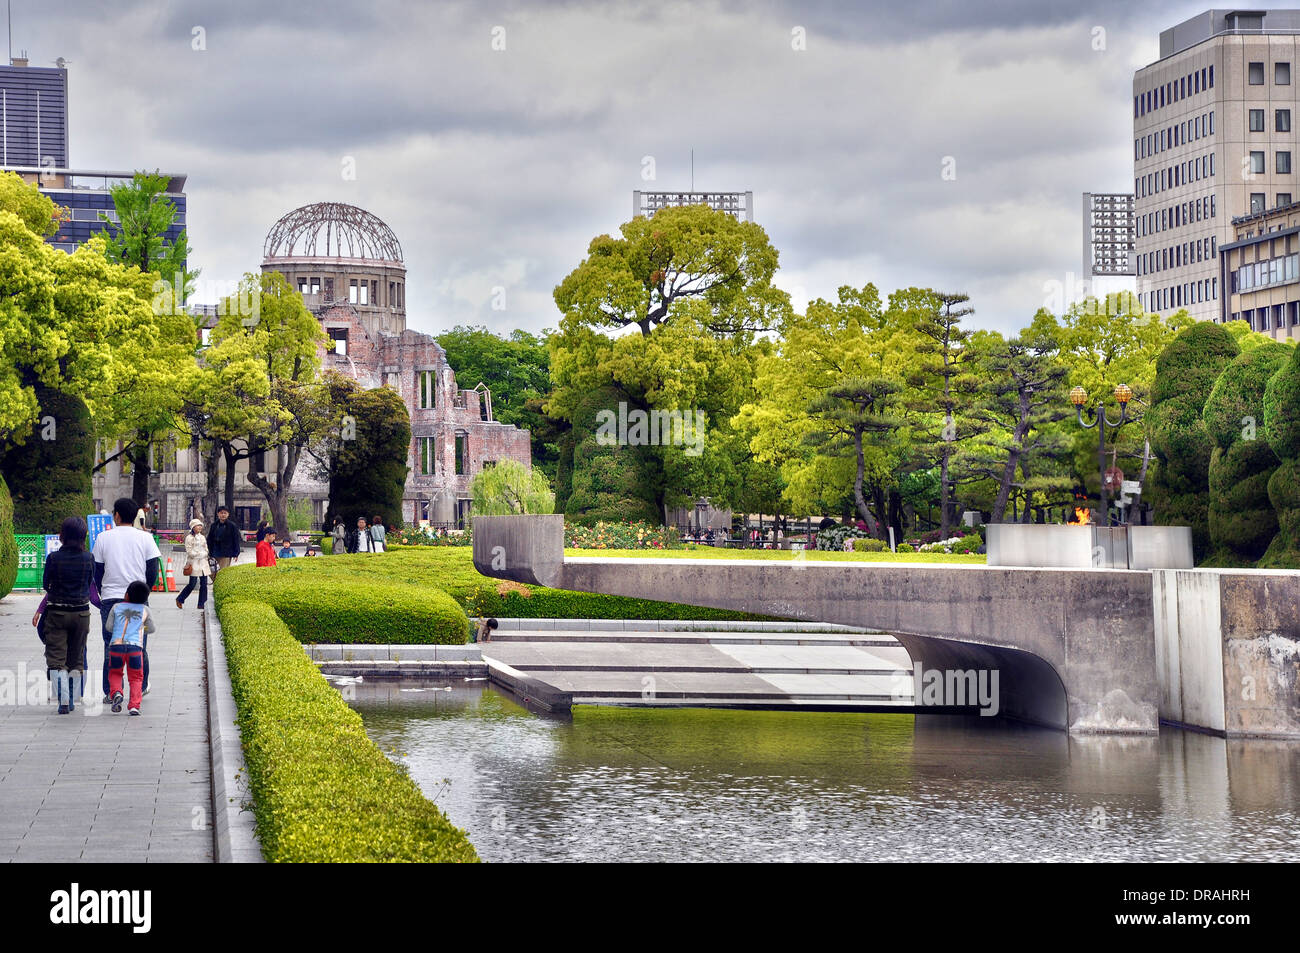 Hiroshima Peace Memorial et le dôme de la bombe atomique dans l'arrière-plan - Hiroshima, Japon Banque D'Images